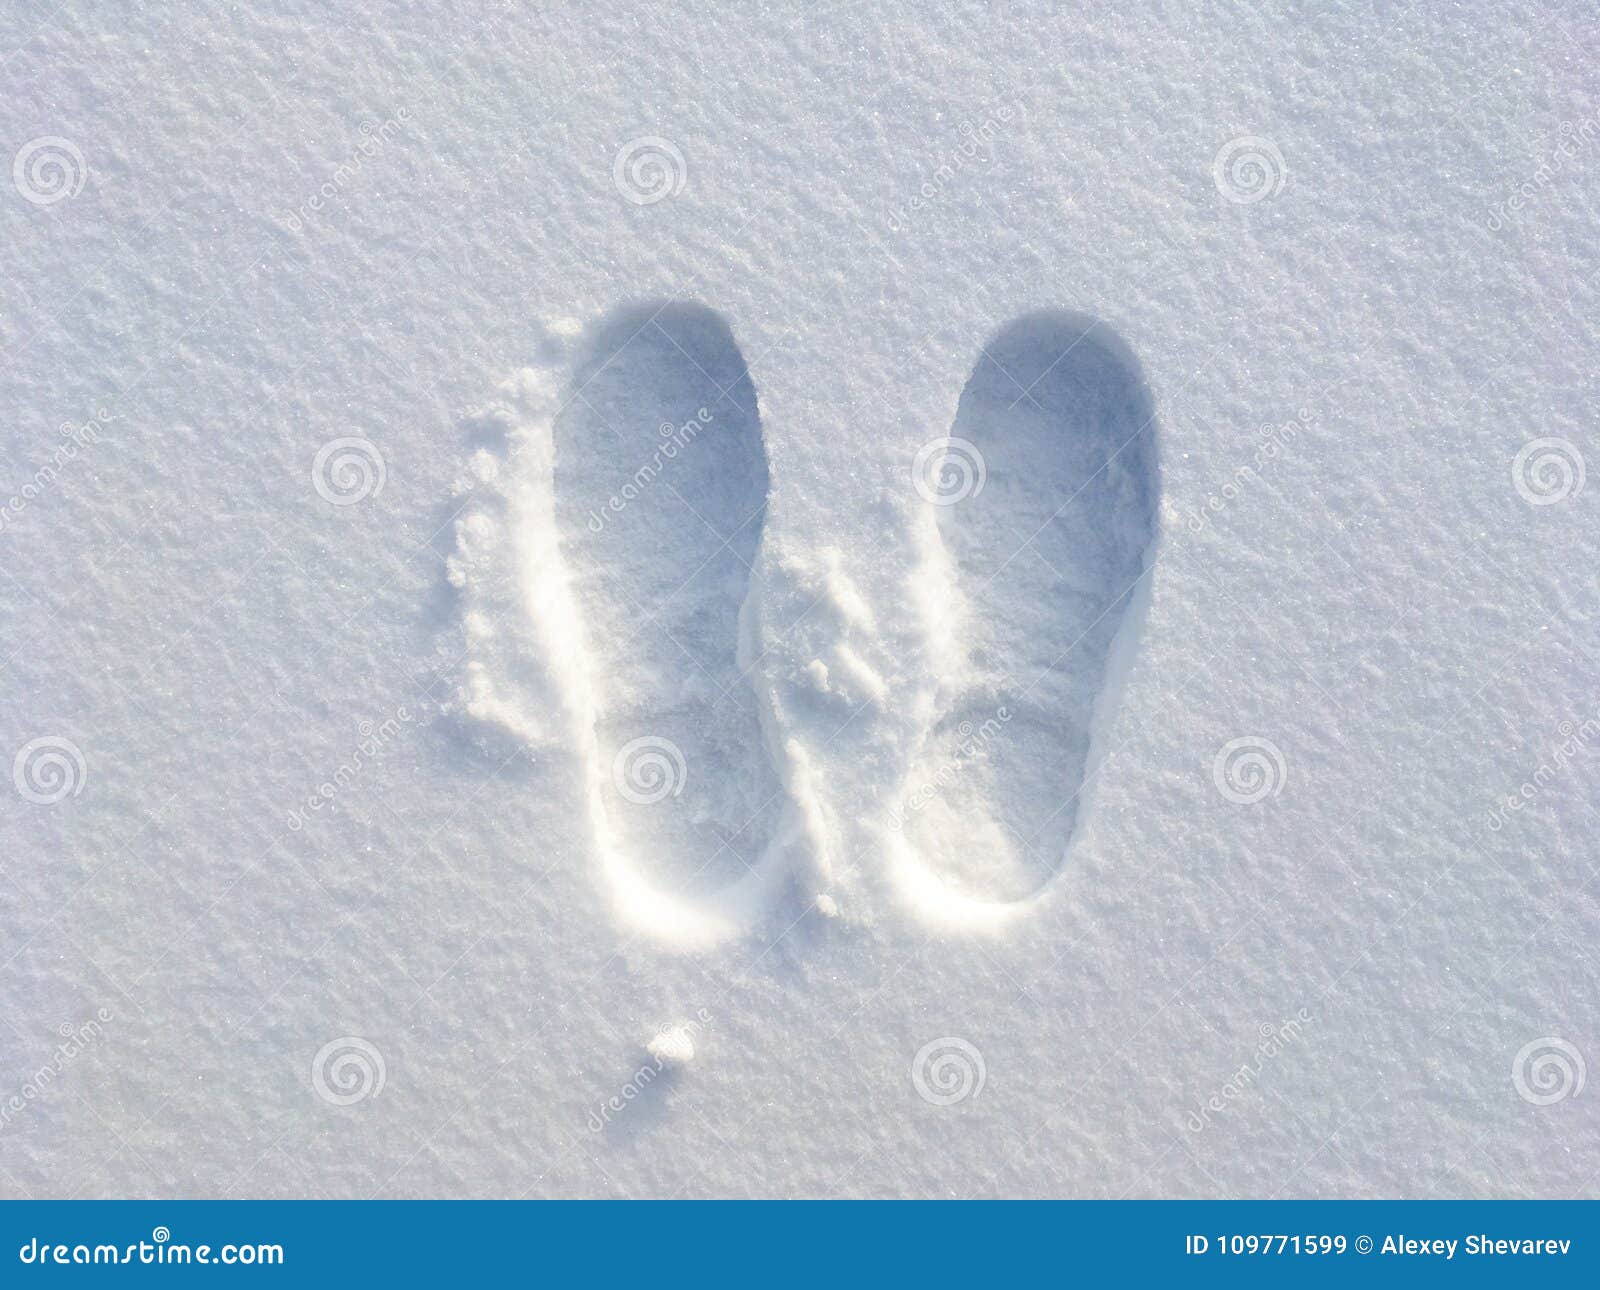 Не было видно следов. Следы на снегу. Следы человека на снегу. Следы обуви на снегу. След ноги человека на снегу.